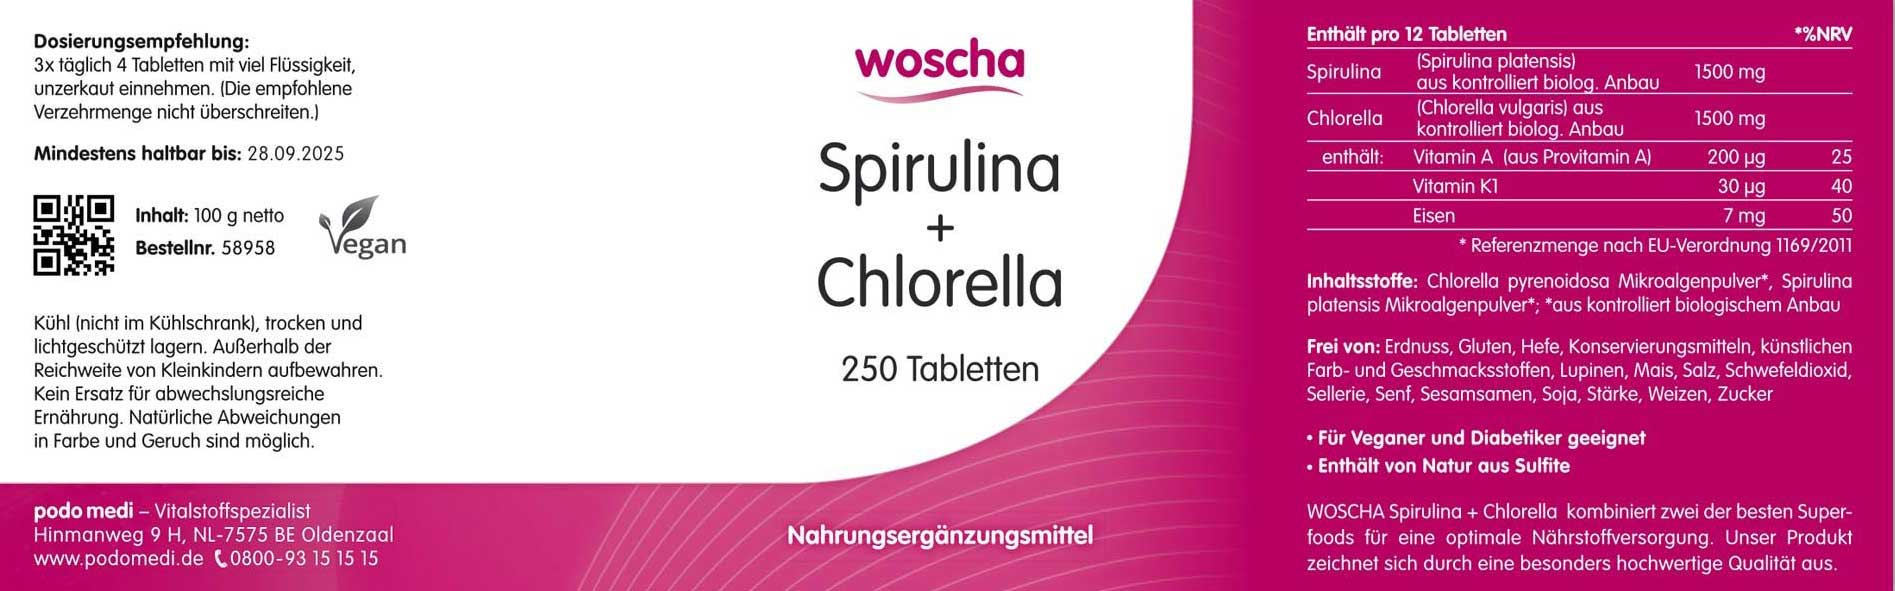 Woscha Spirulina + Chlorella von podo medi beinhaltet 250 Tabletten Etikett